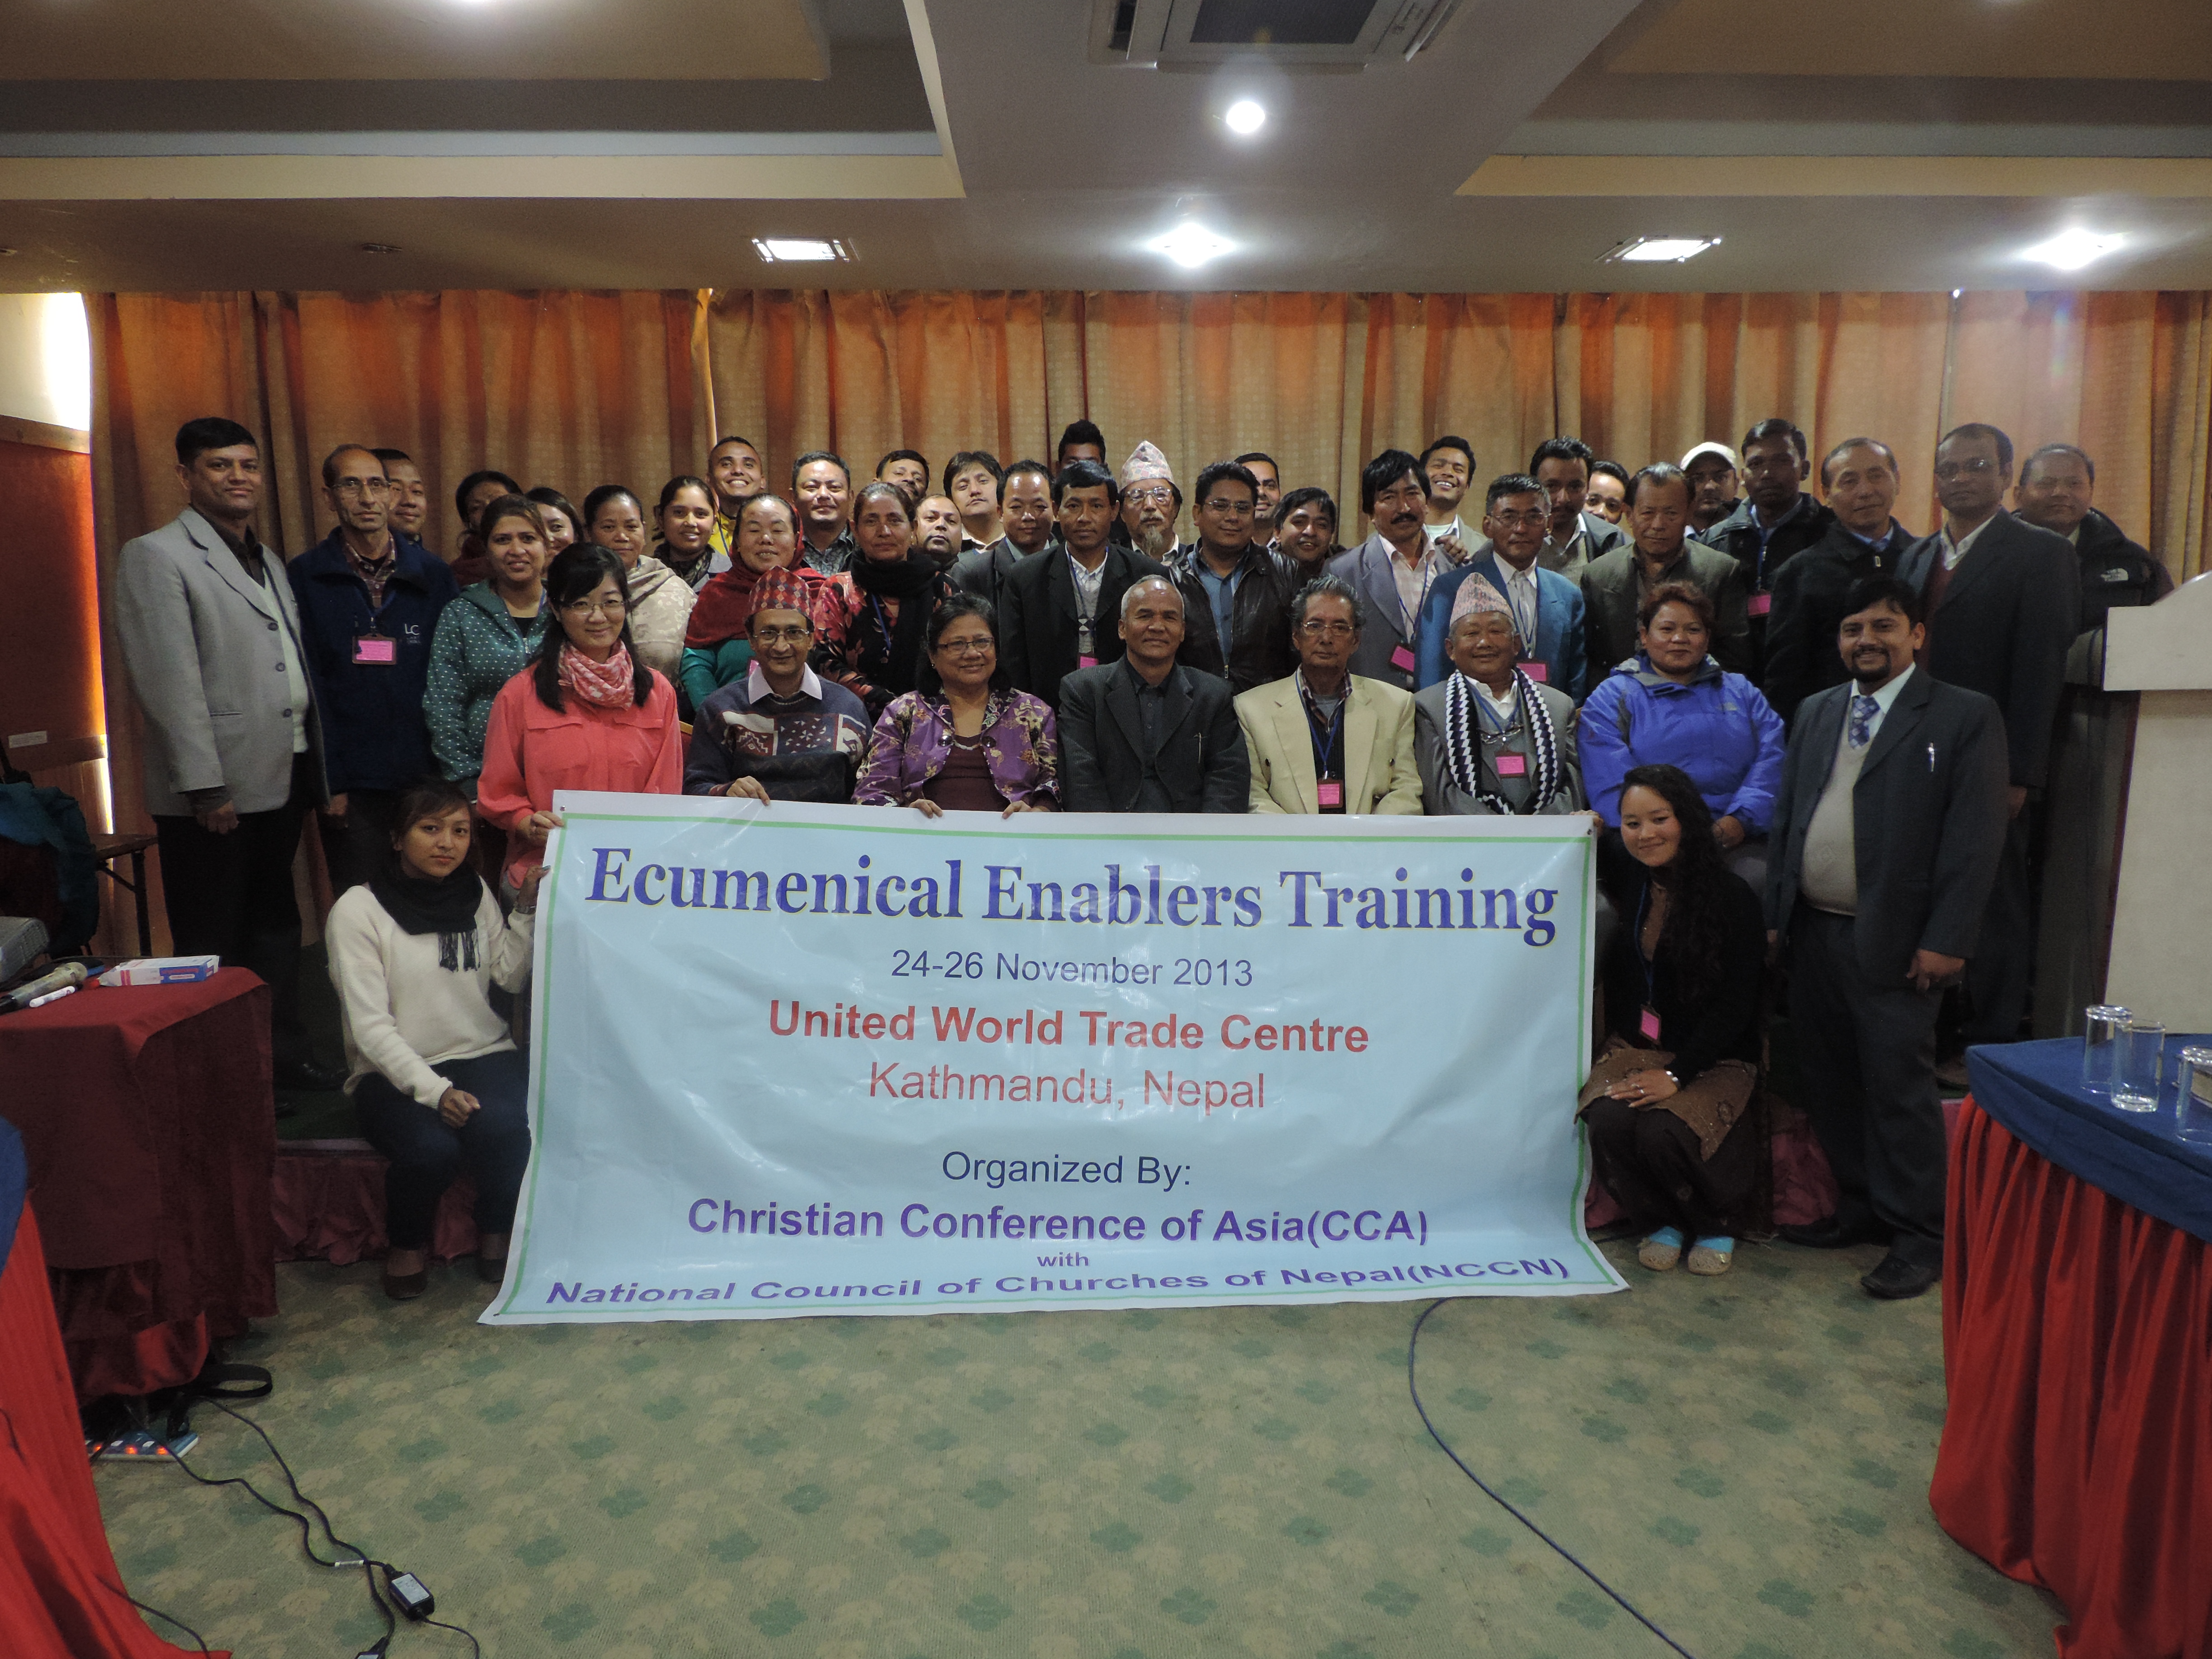 Deltagarna i det ekumeniska seminariet som hölls i Kathmandu 24-26.11.2013